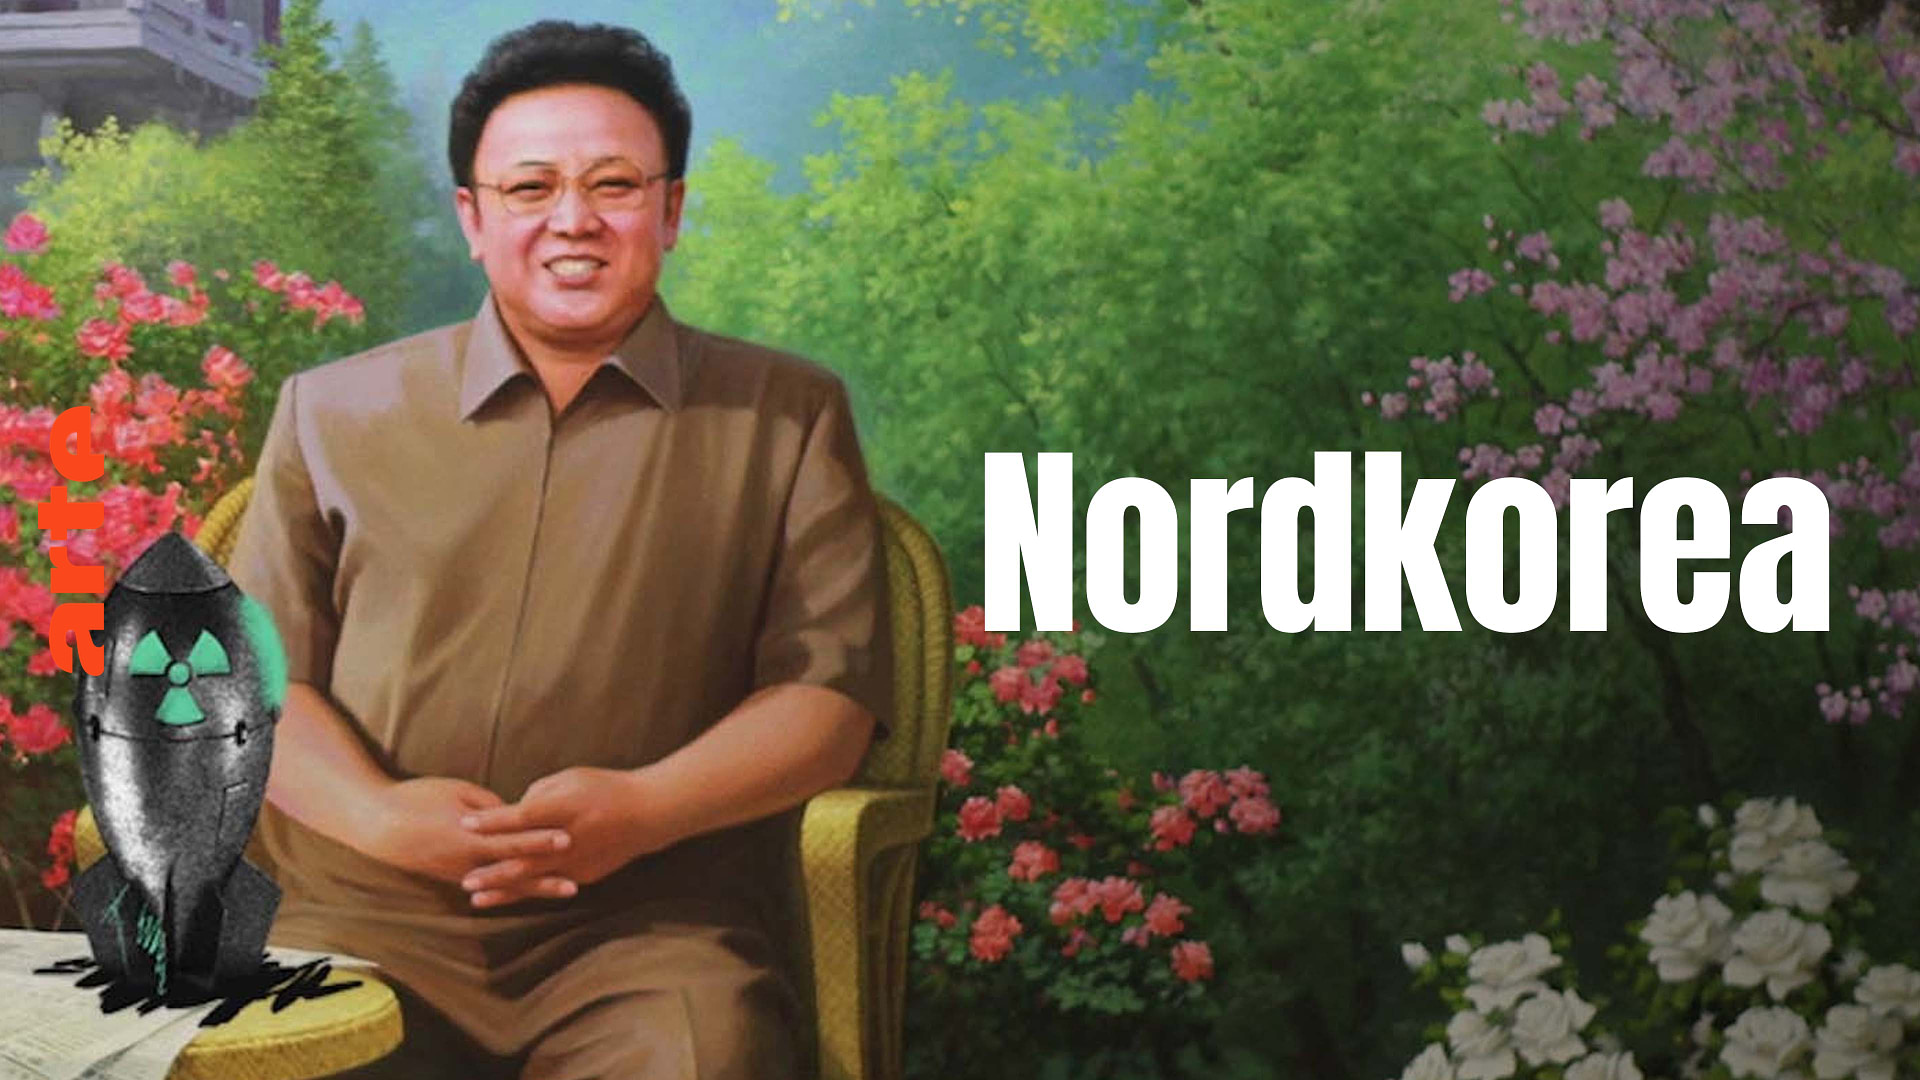 Stories of Conflict: Nordkorea